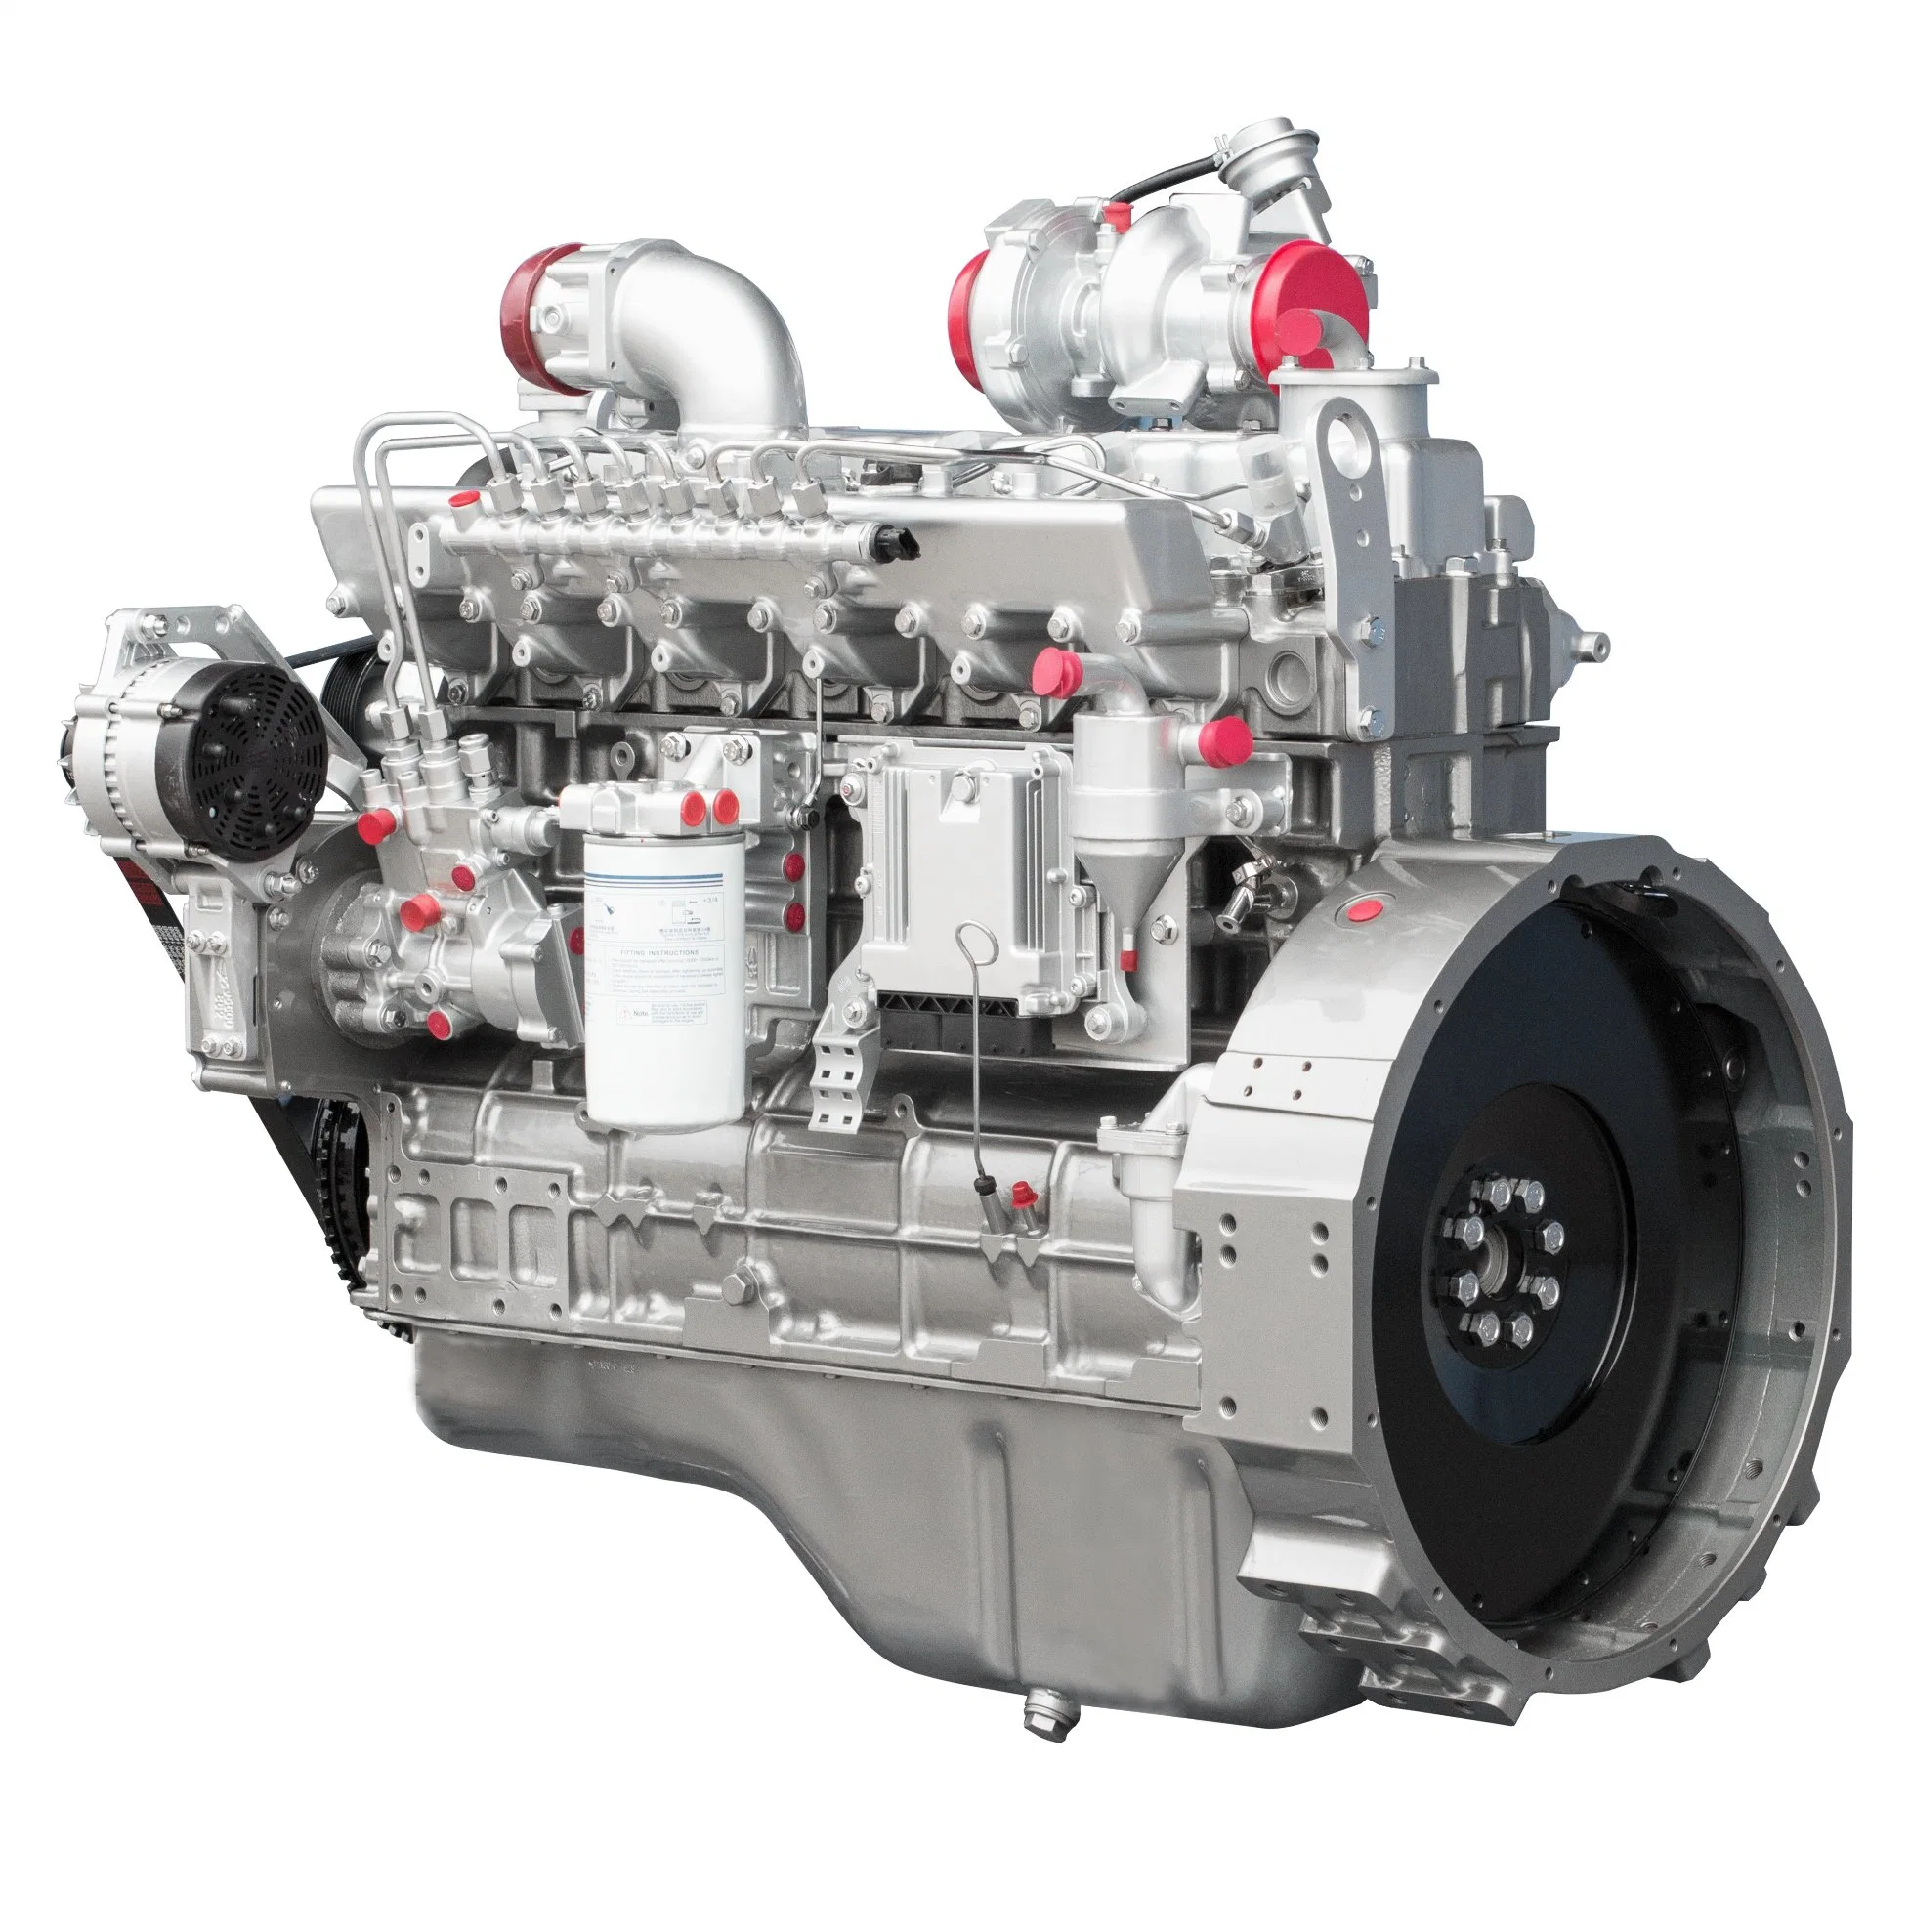  Fournir le moteur diesel classique Yuchai YC6JA Euro 5 avec de bonnes performances de puissance, d'économie et de fiabilité 